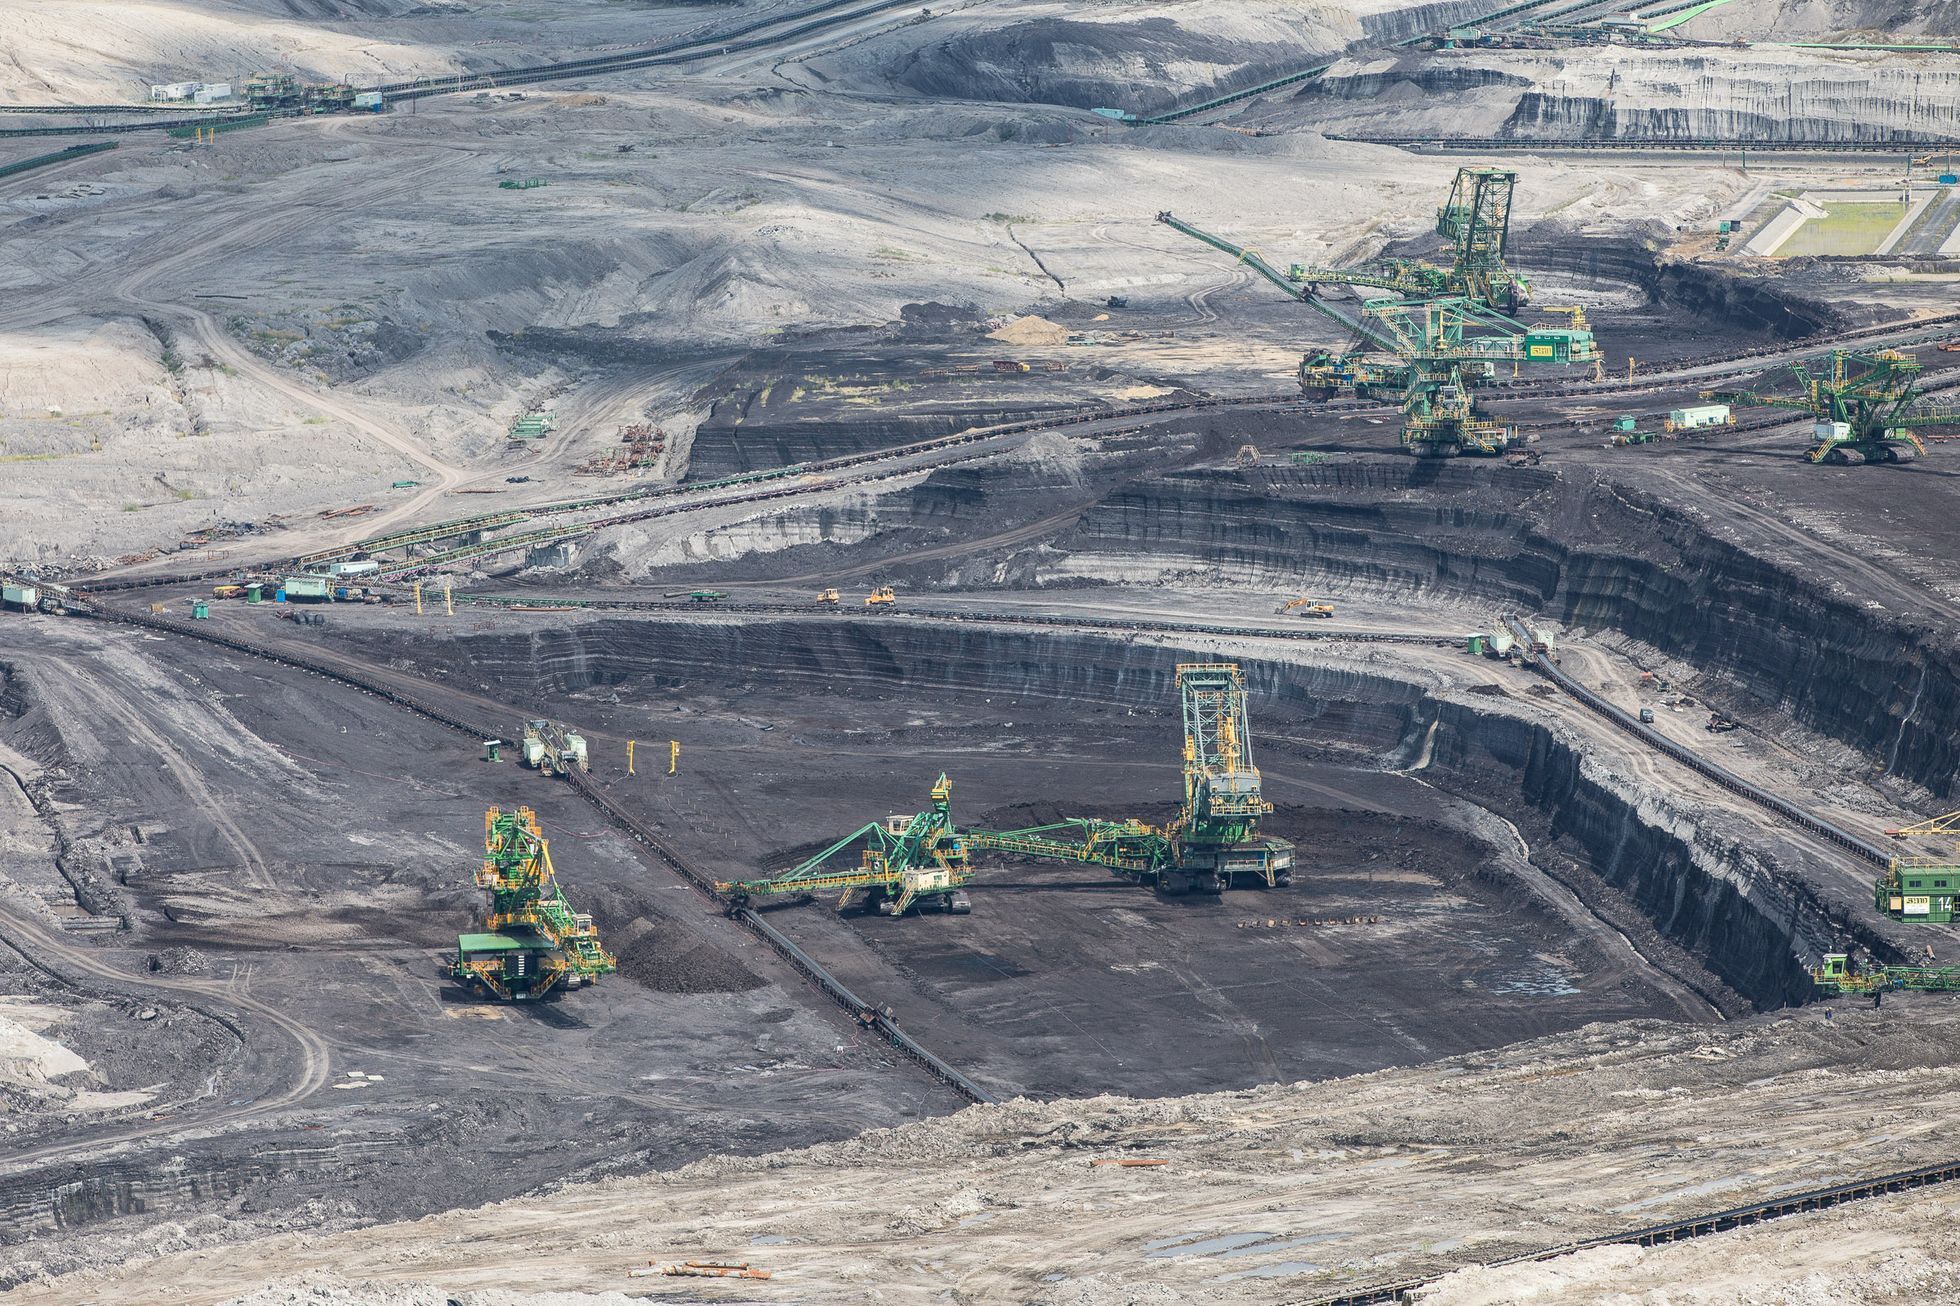 Důl Turow, Bogatynia, hnědé uhlí, lom, těžba, průmysl, znečištění, PGE, Polsko